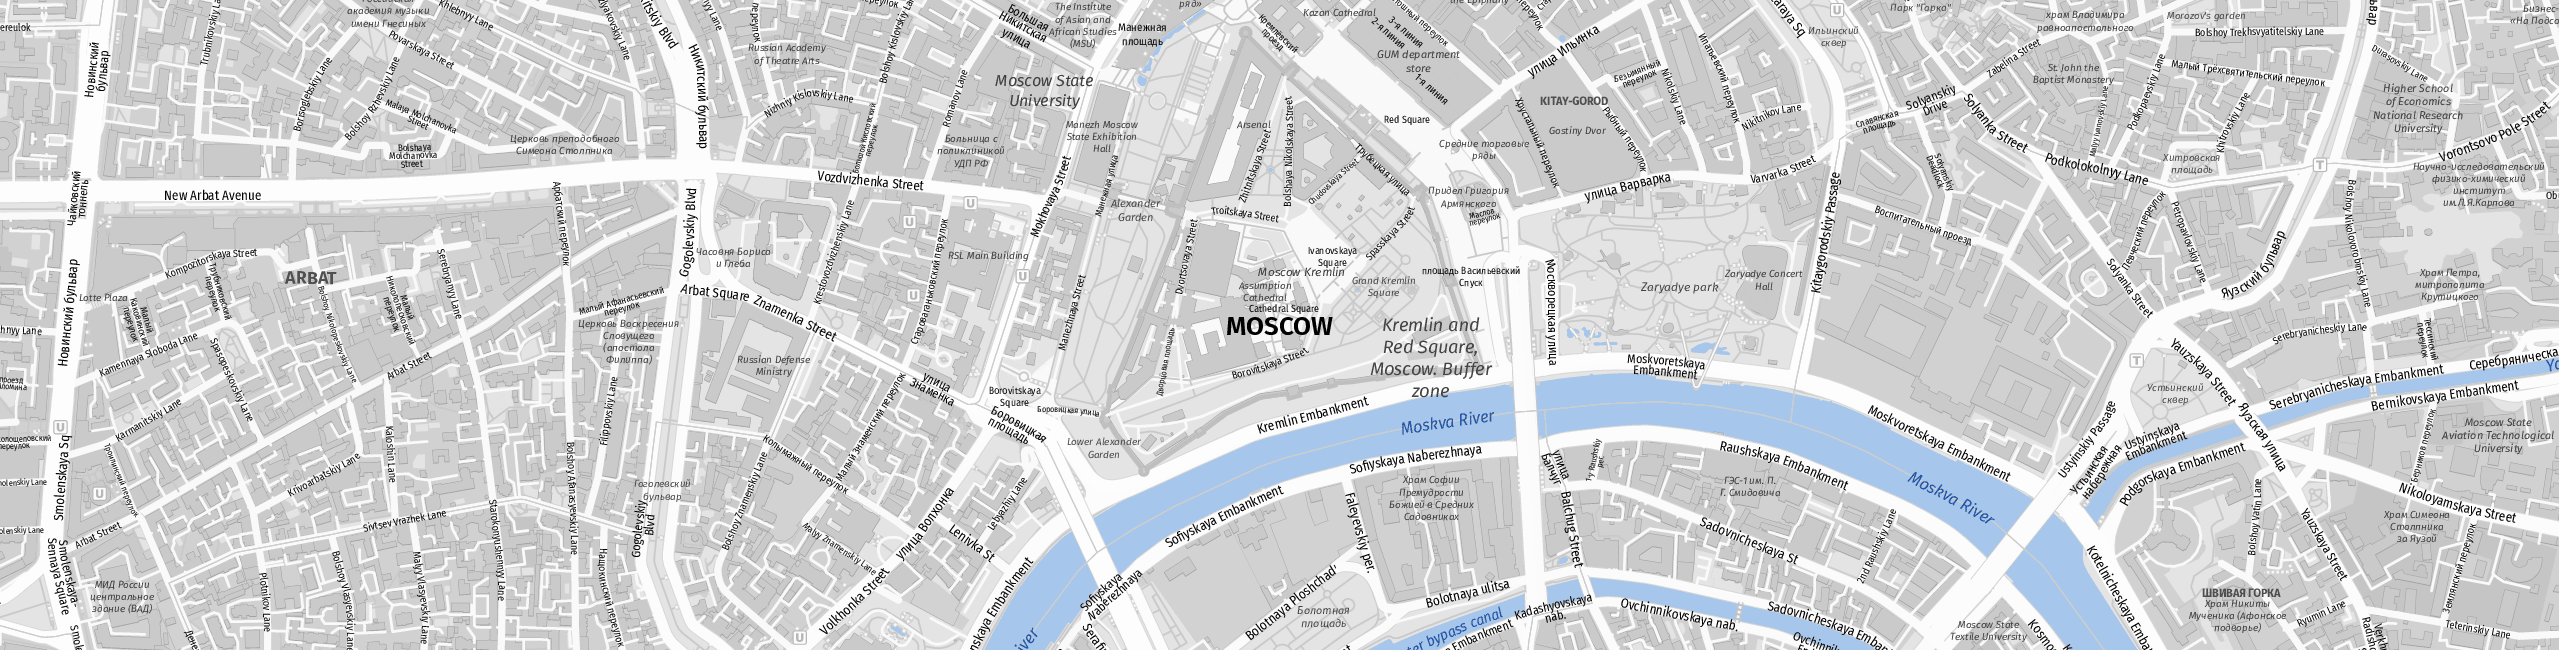 Stadtplan Moscow zum Downloaden.